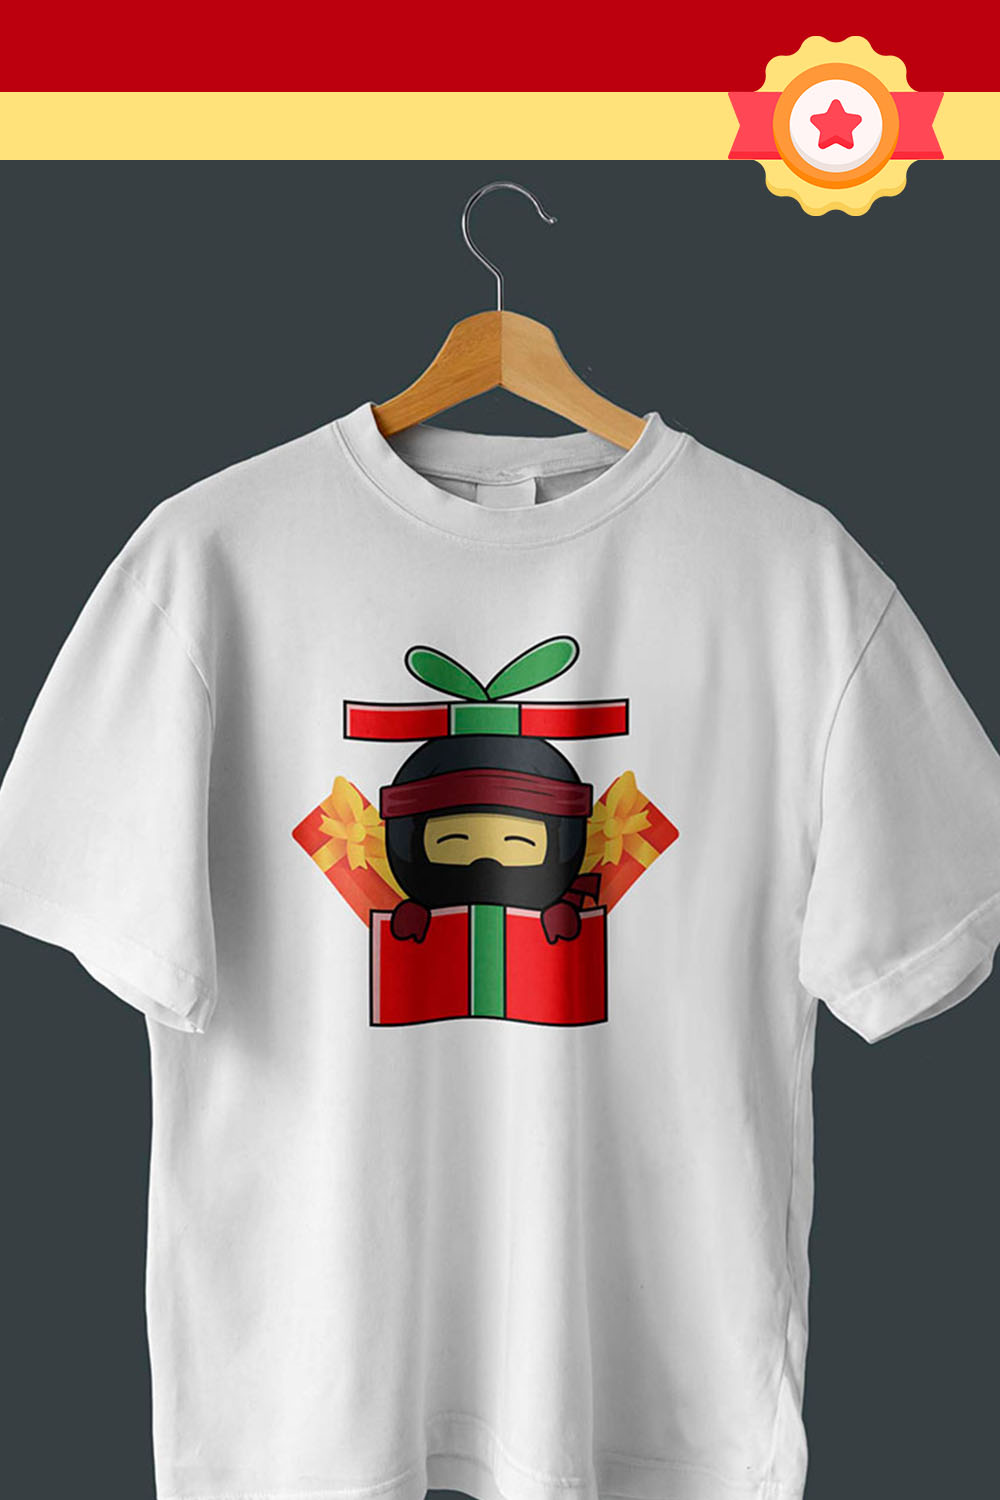 Ninja Gift Illustration T-Shirt Design Pinterest image.